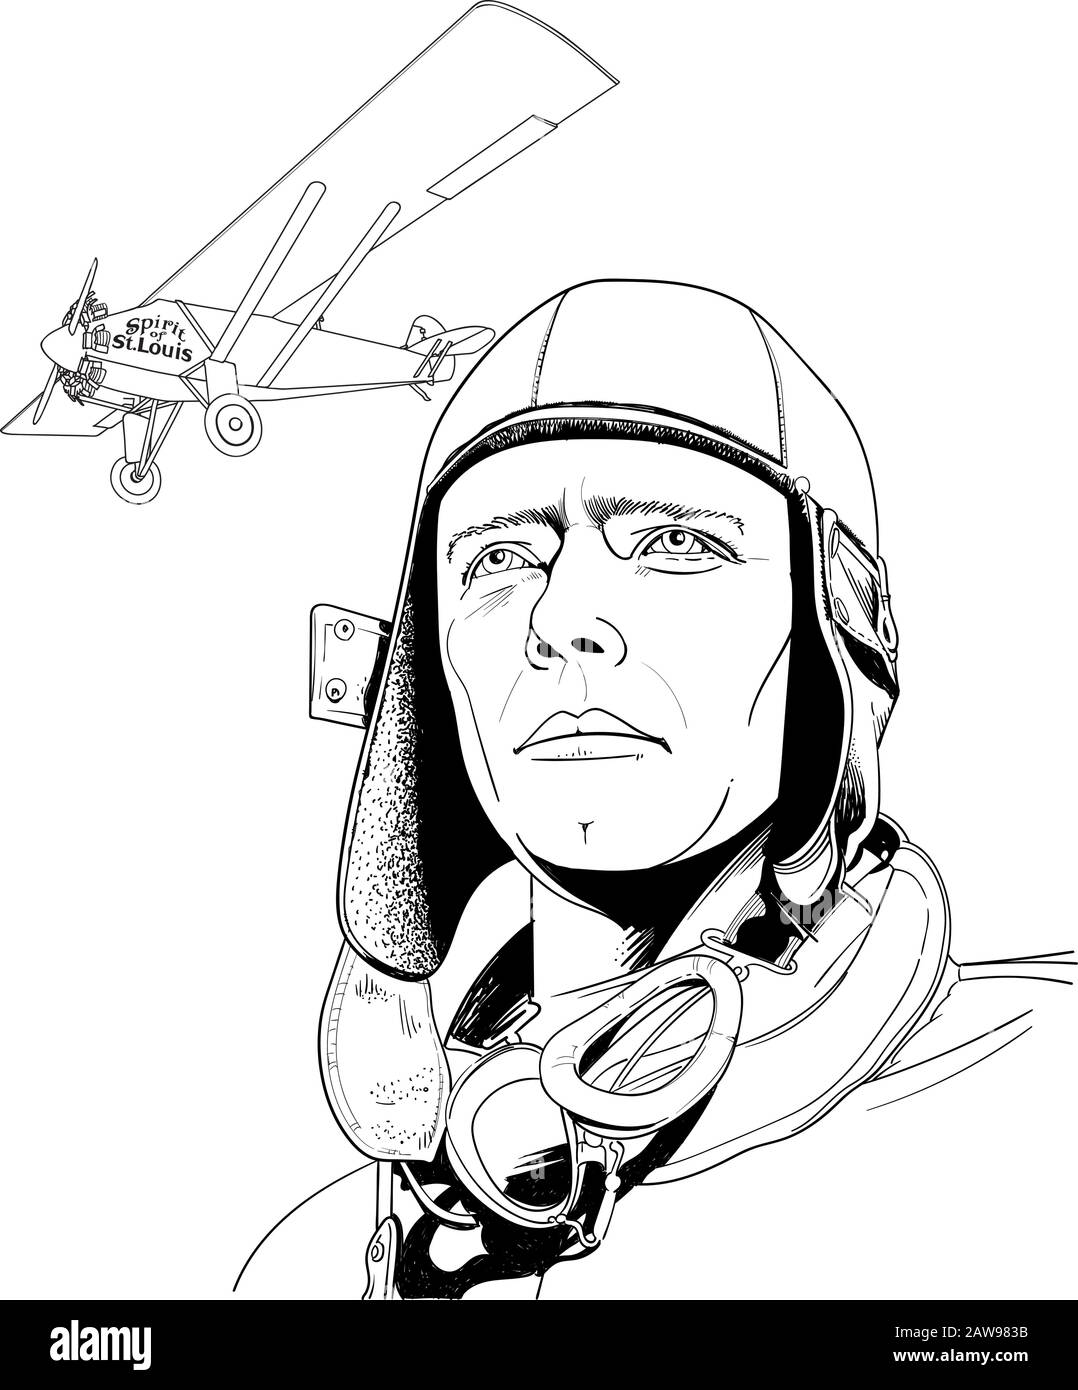 Charles Augustus Lindbergh war ein US-amerikanischer Flieger, Militäroffizier, Autor, Erfinder und Aktivist. Stock Vektor